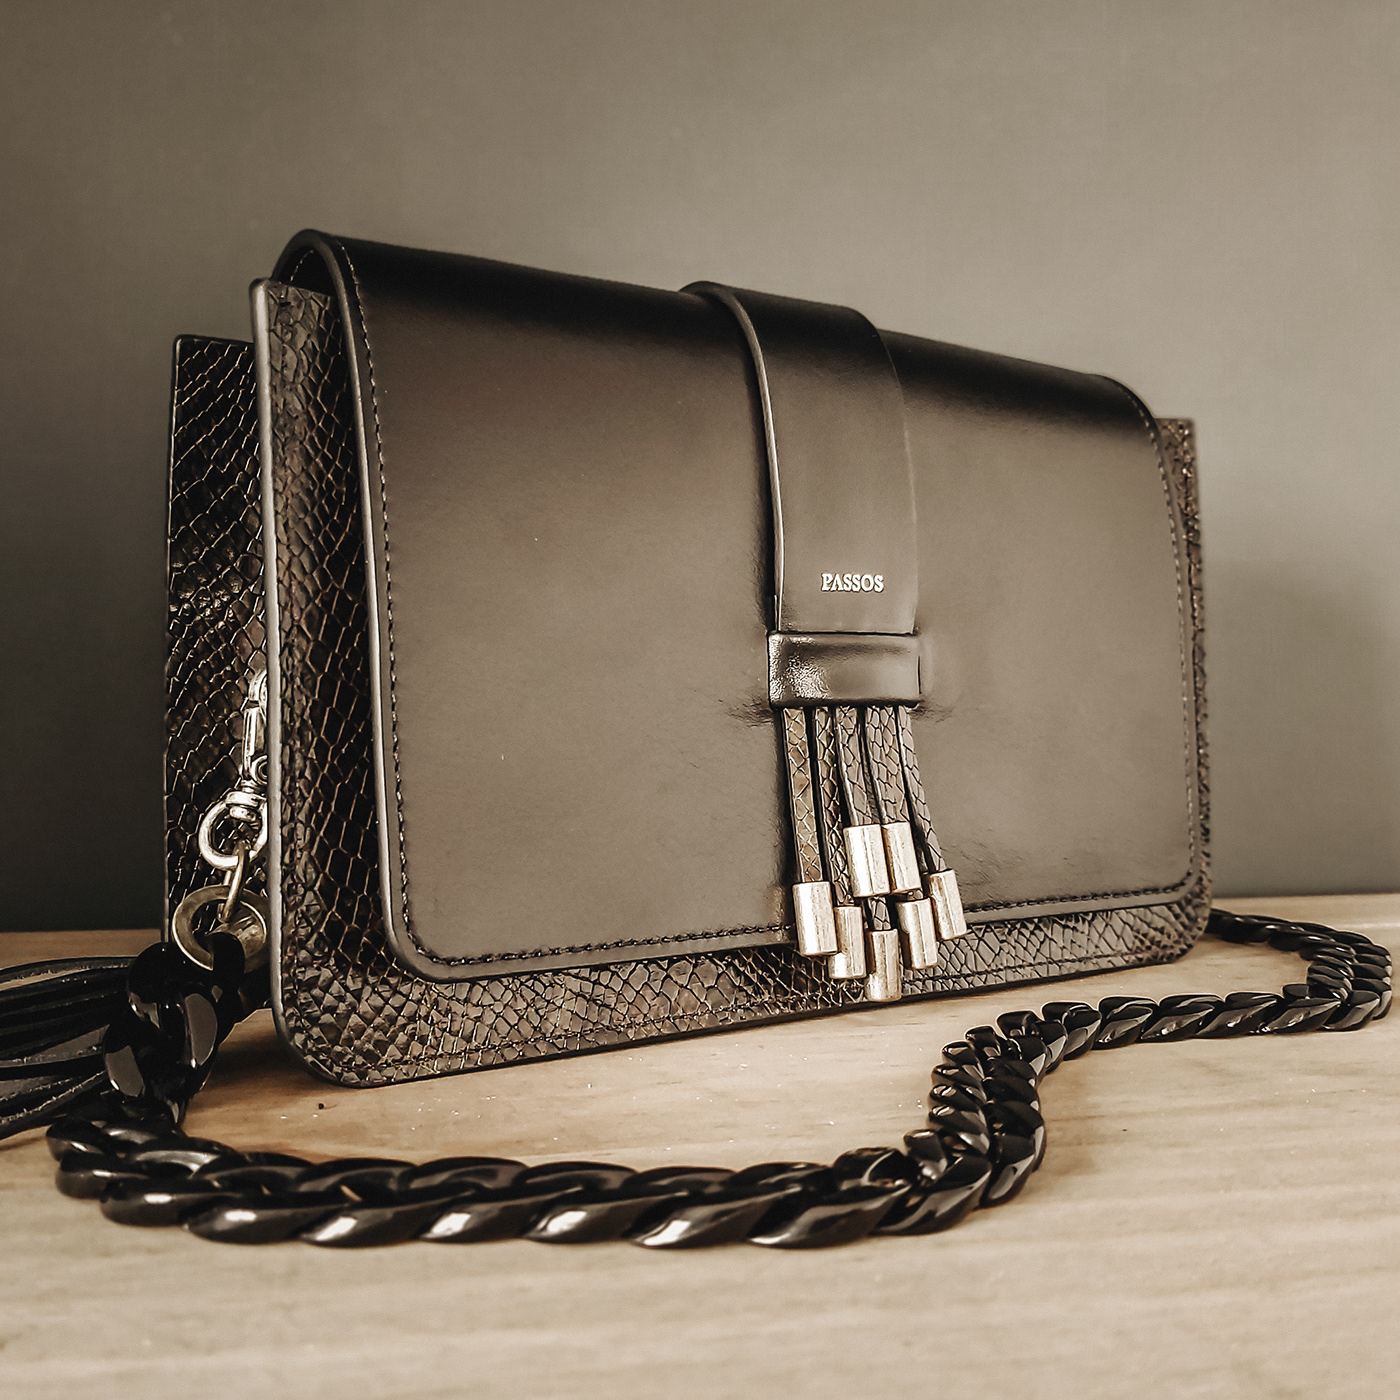 CrossbodyBAG leather leatherbag leatherbags leatherpurse luxurybags luxurygoods shoulderbag